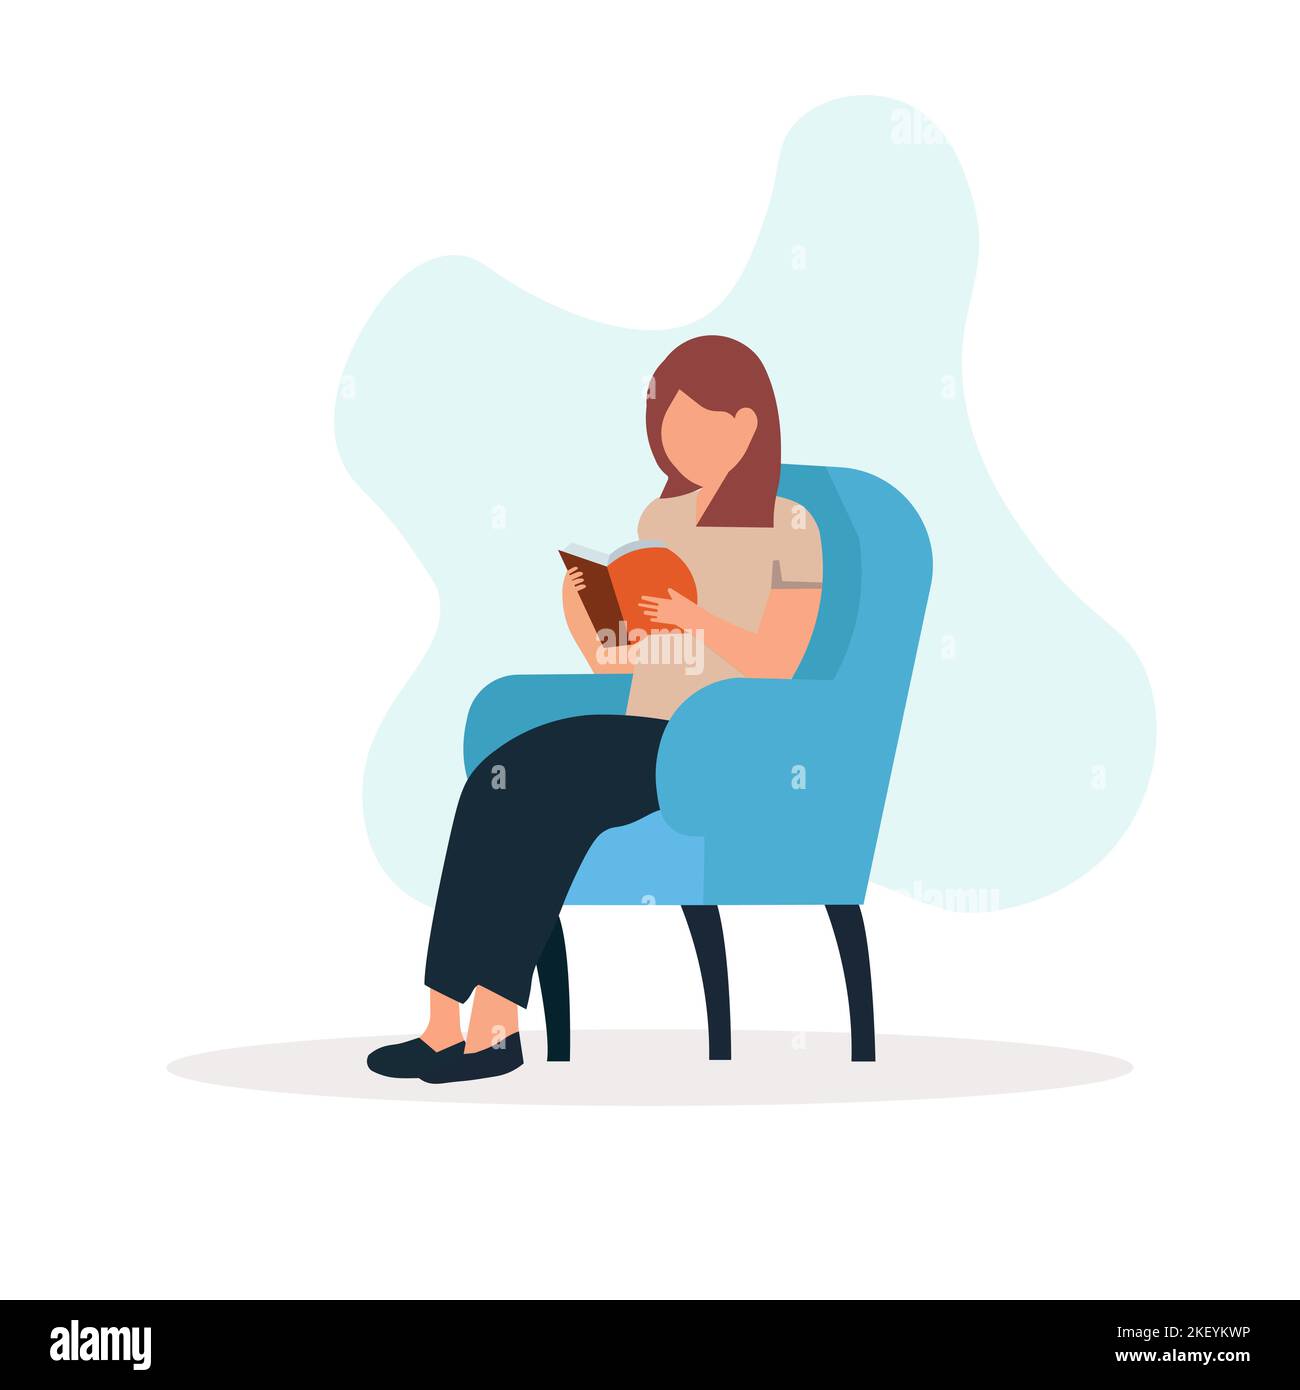 Femme assise sur une chaise pour lire un livre. Le concept de l'amour pour les livres et la lecture, l'apprentissage, la préparation à l'examen. Illustration vectorielle. Illustration de Vecteur